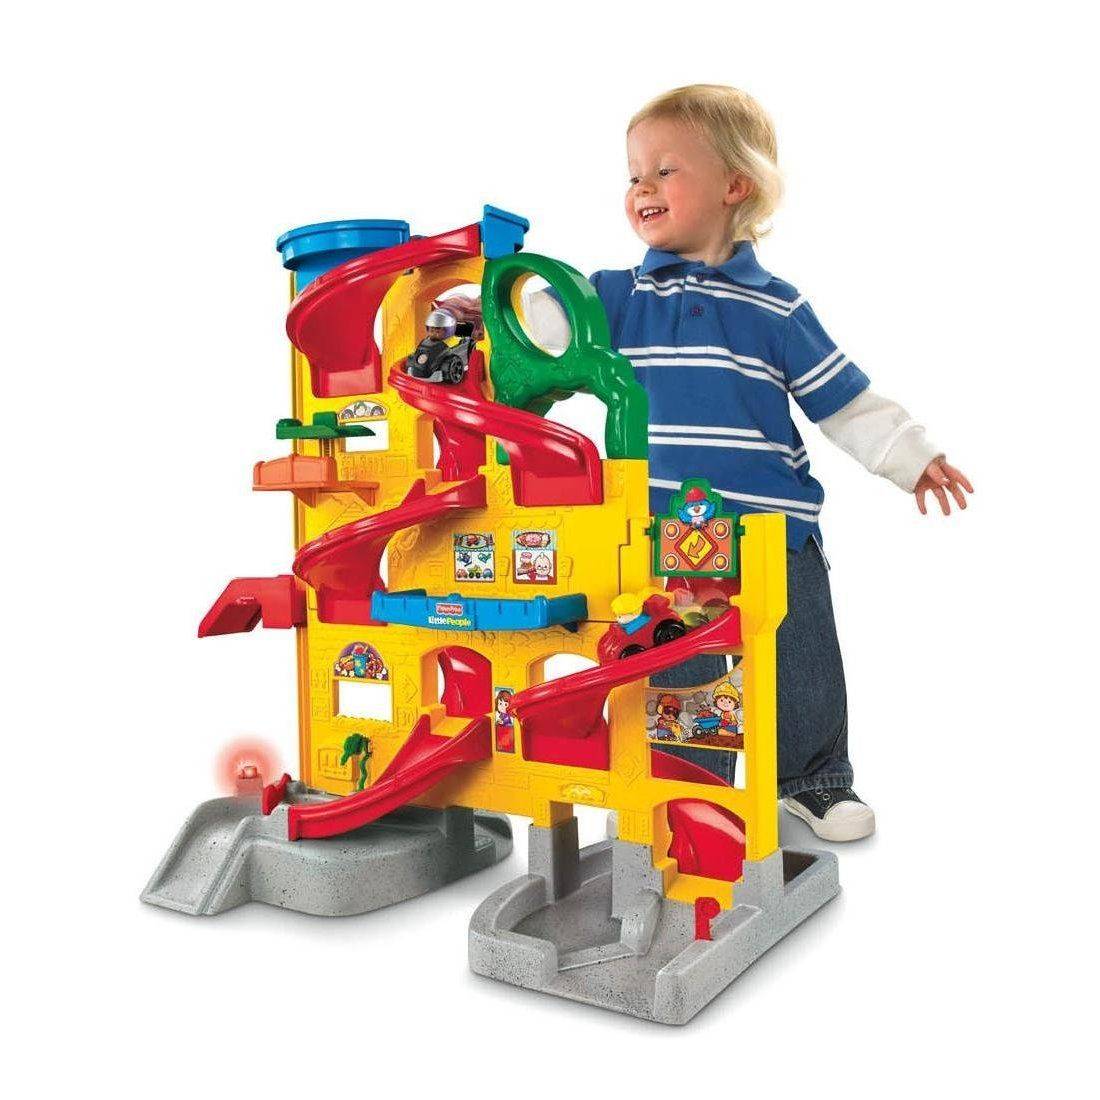 Что подарить ребёнку на 1 год мальчику и девочке: выбор хороших игрушек с учётом возрастных особенностей